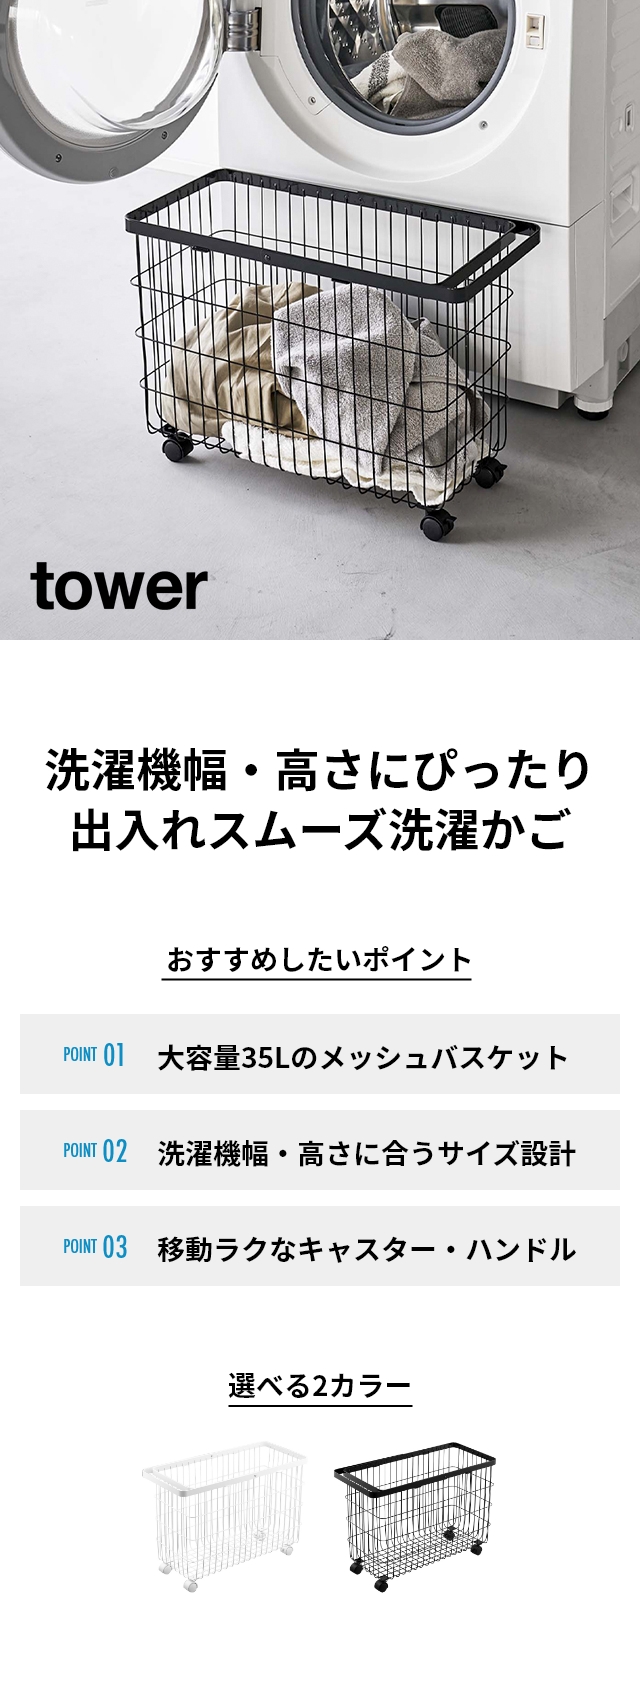 tower (タワー) ランドリーバスケット キャスター付き ワイド&ロー